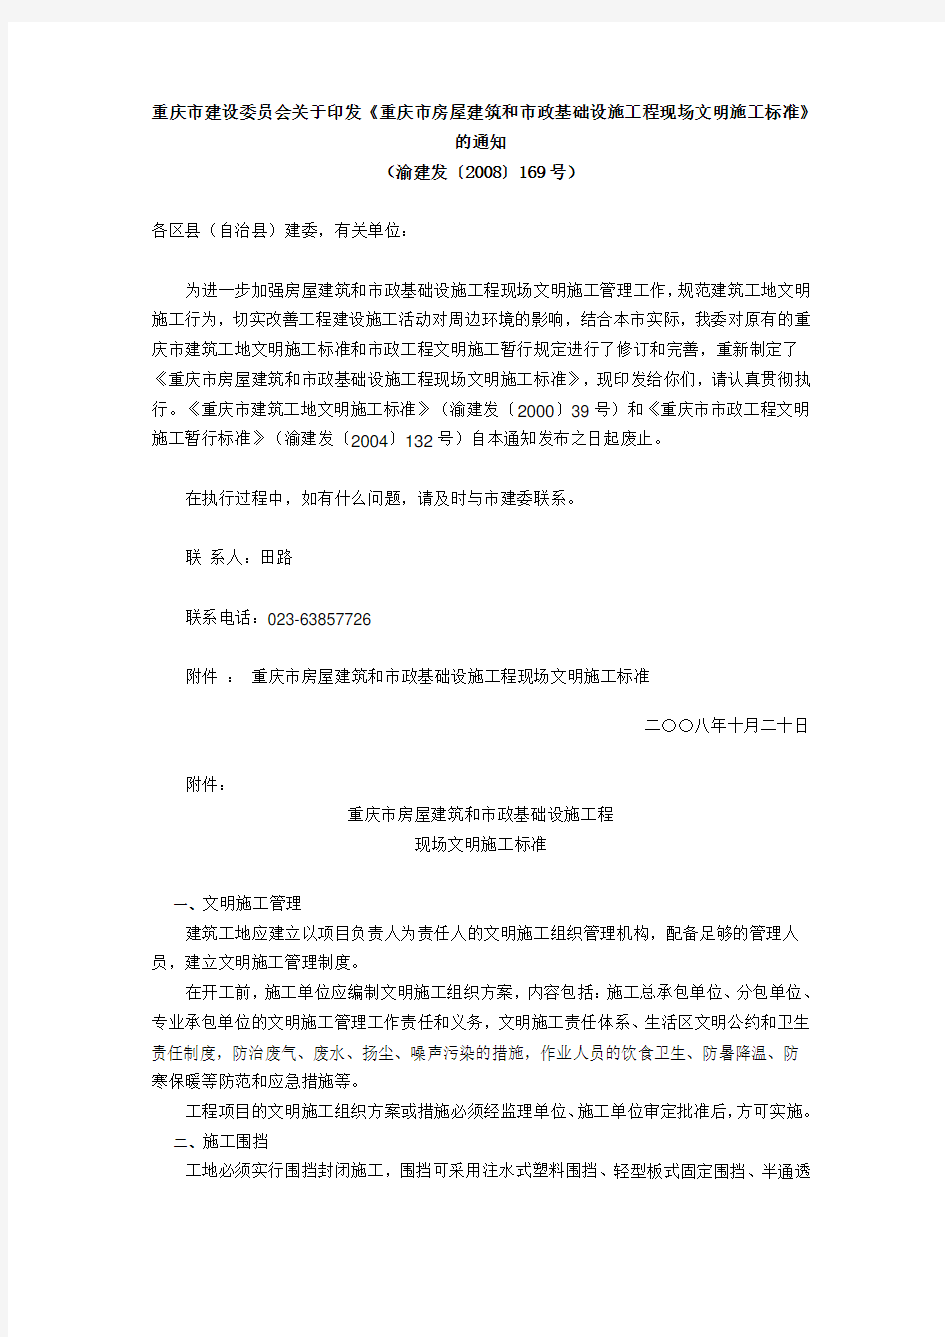 重庆市建设委员会关于印发《重庆市房屋建筑和市政基础设施工程现场文明施工标准》(渝建发[2008]169号)